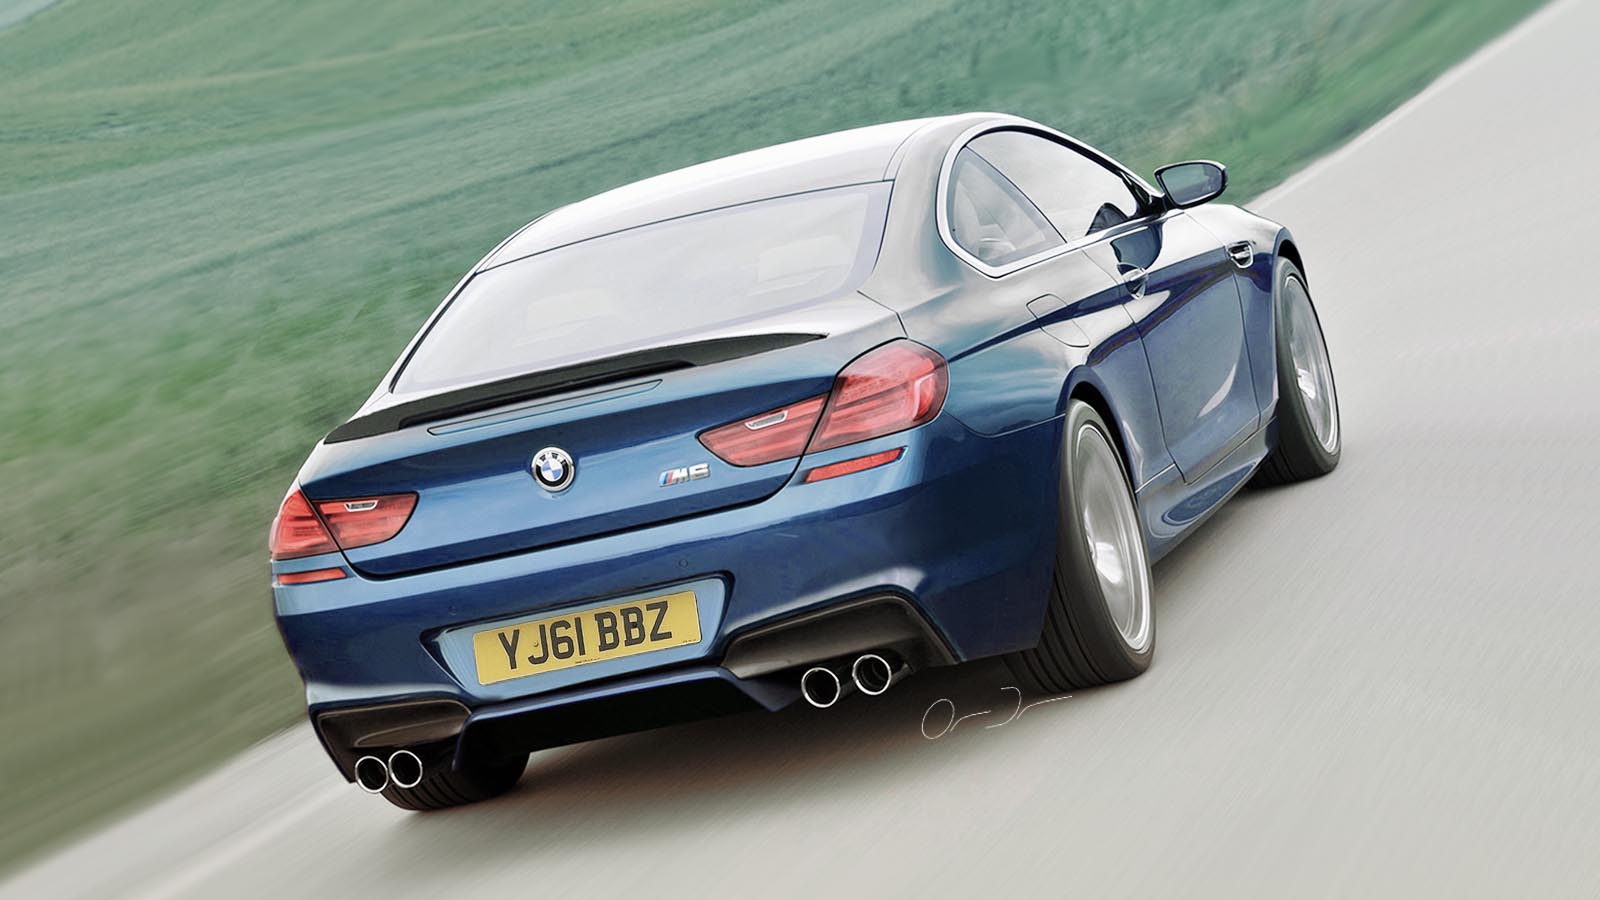 BMW-M6-F13-Coupé-Rendering-Duron-Automotive-Artwork-2.jpg